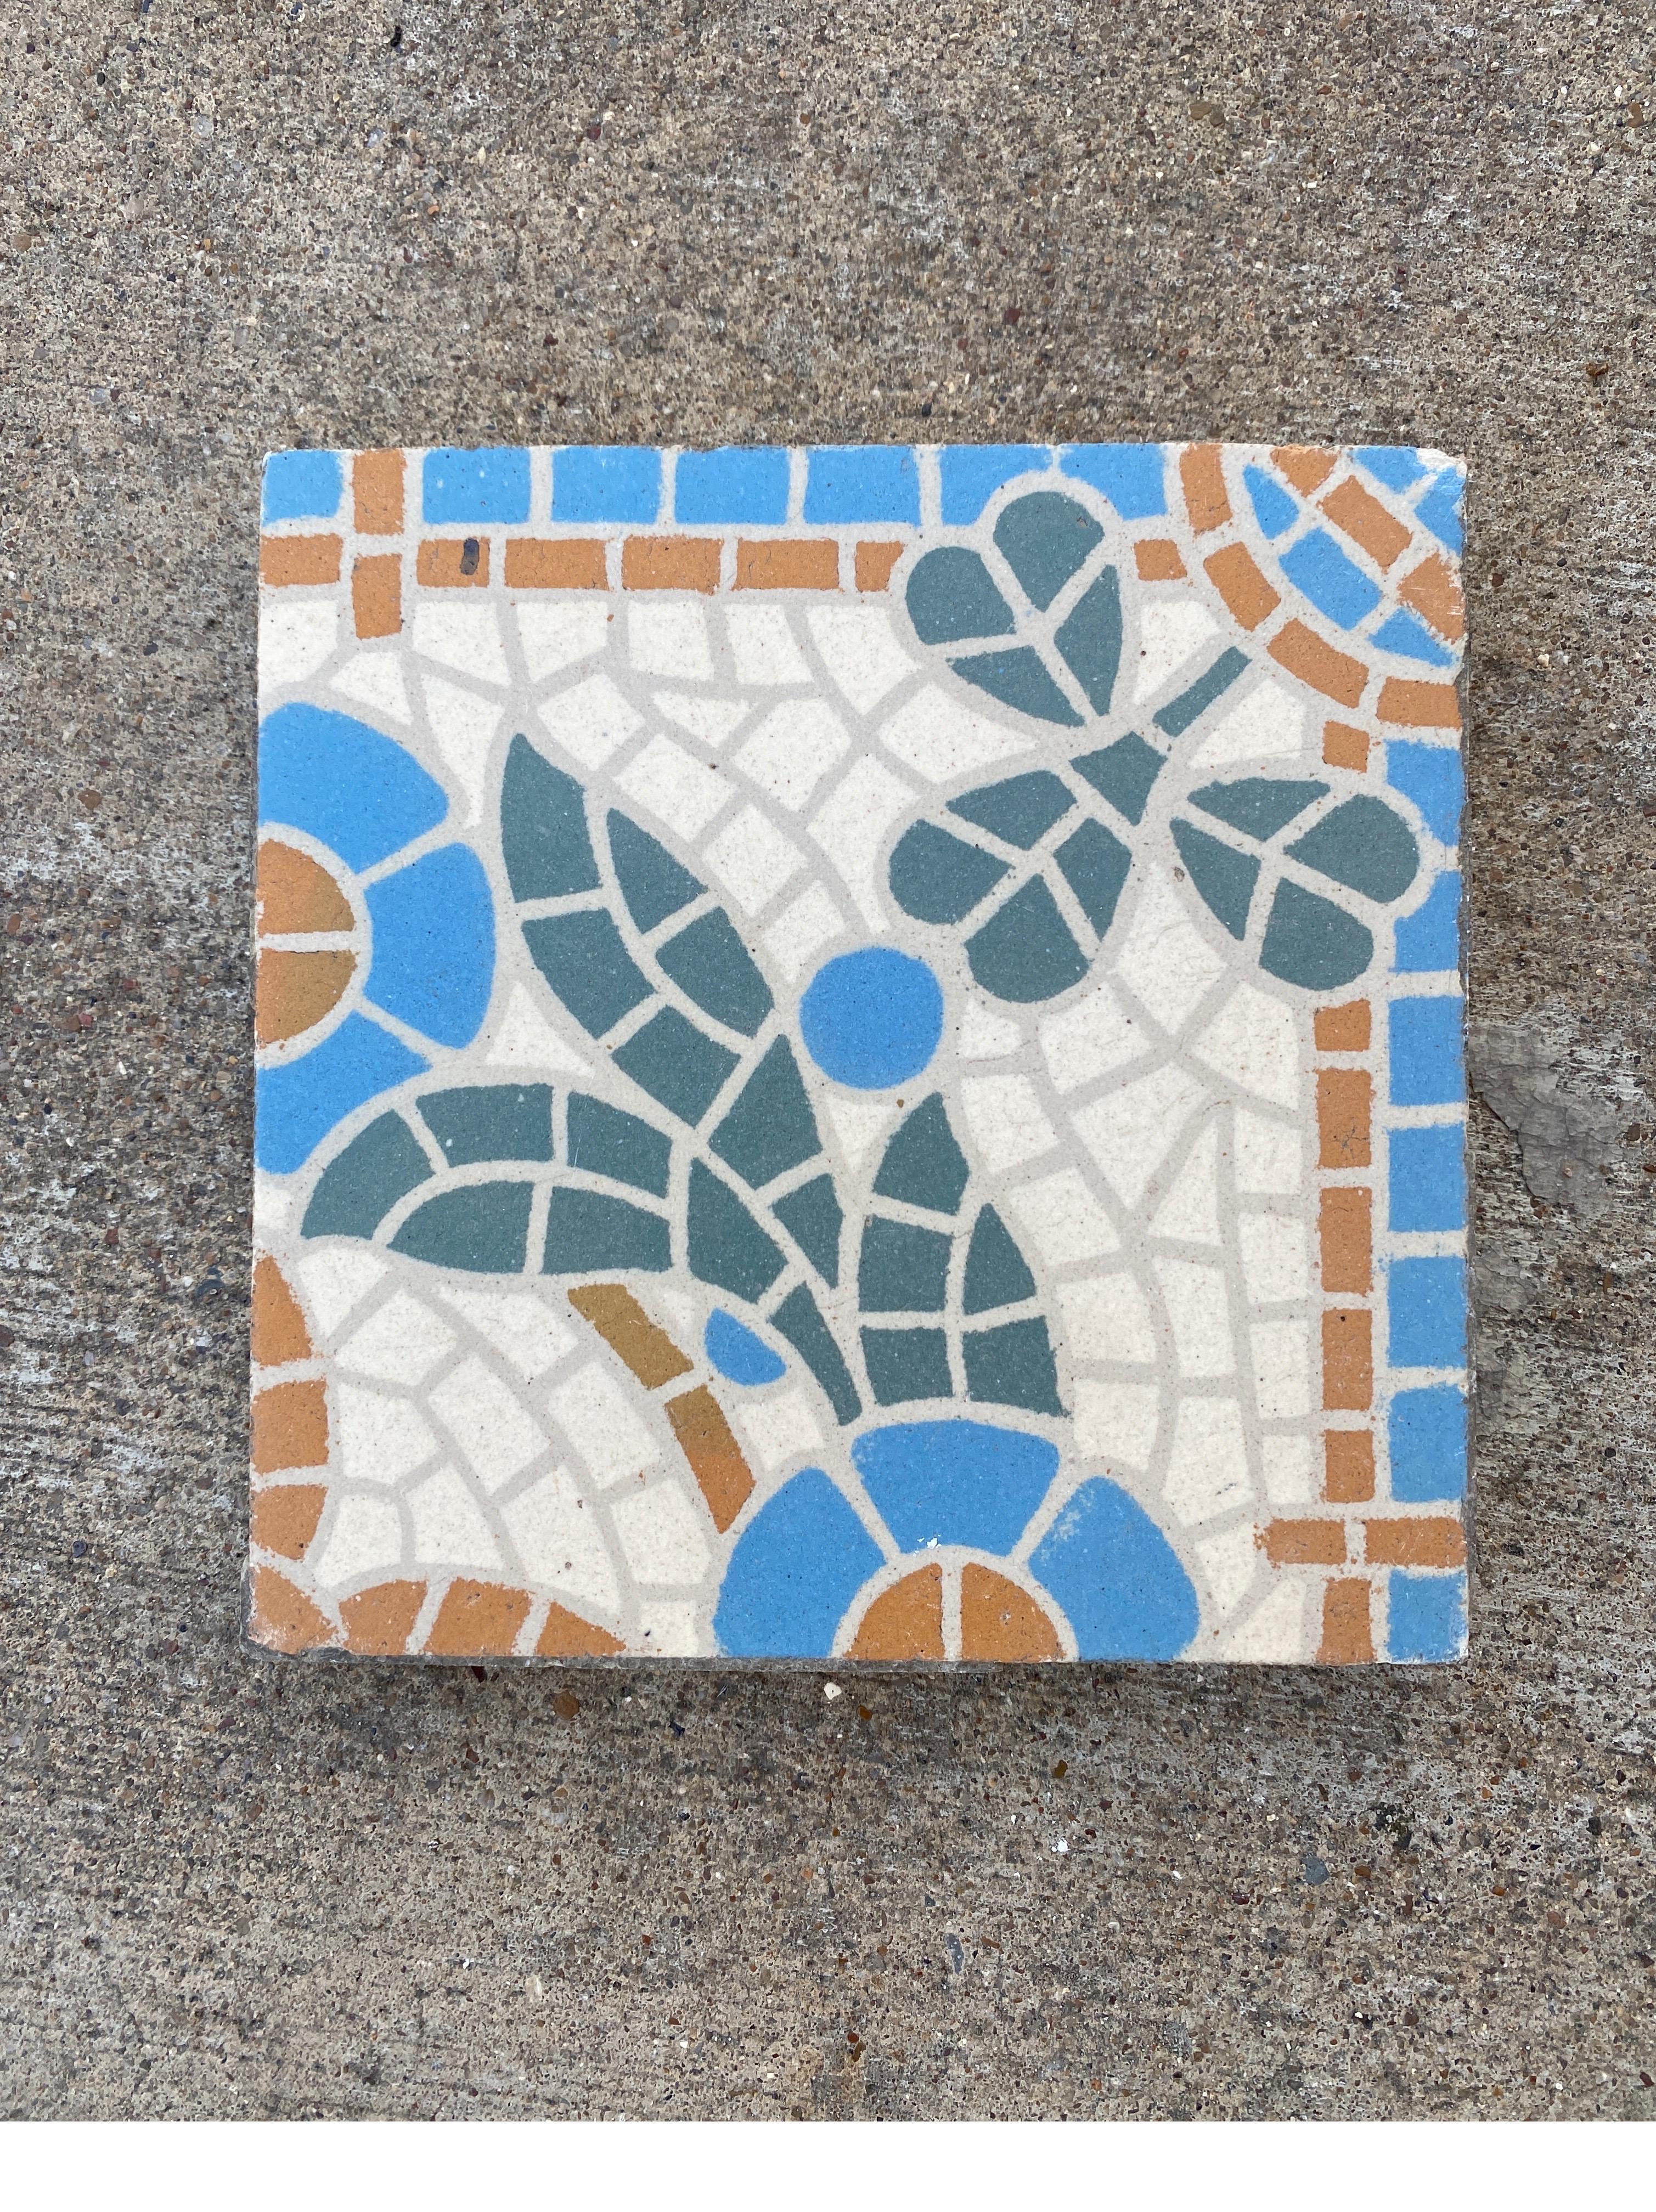 encaustic floor tiles